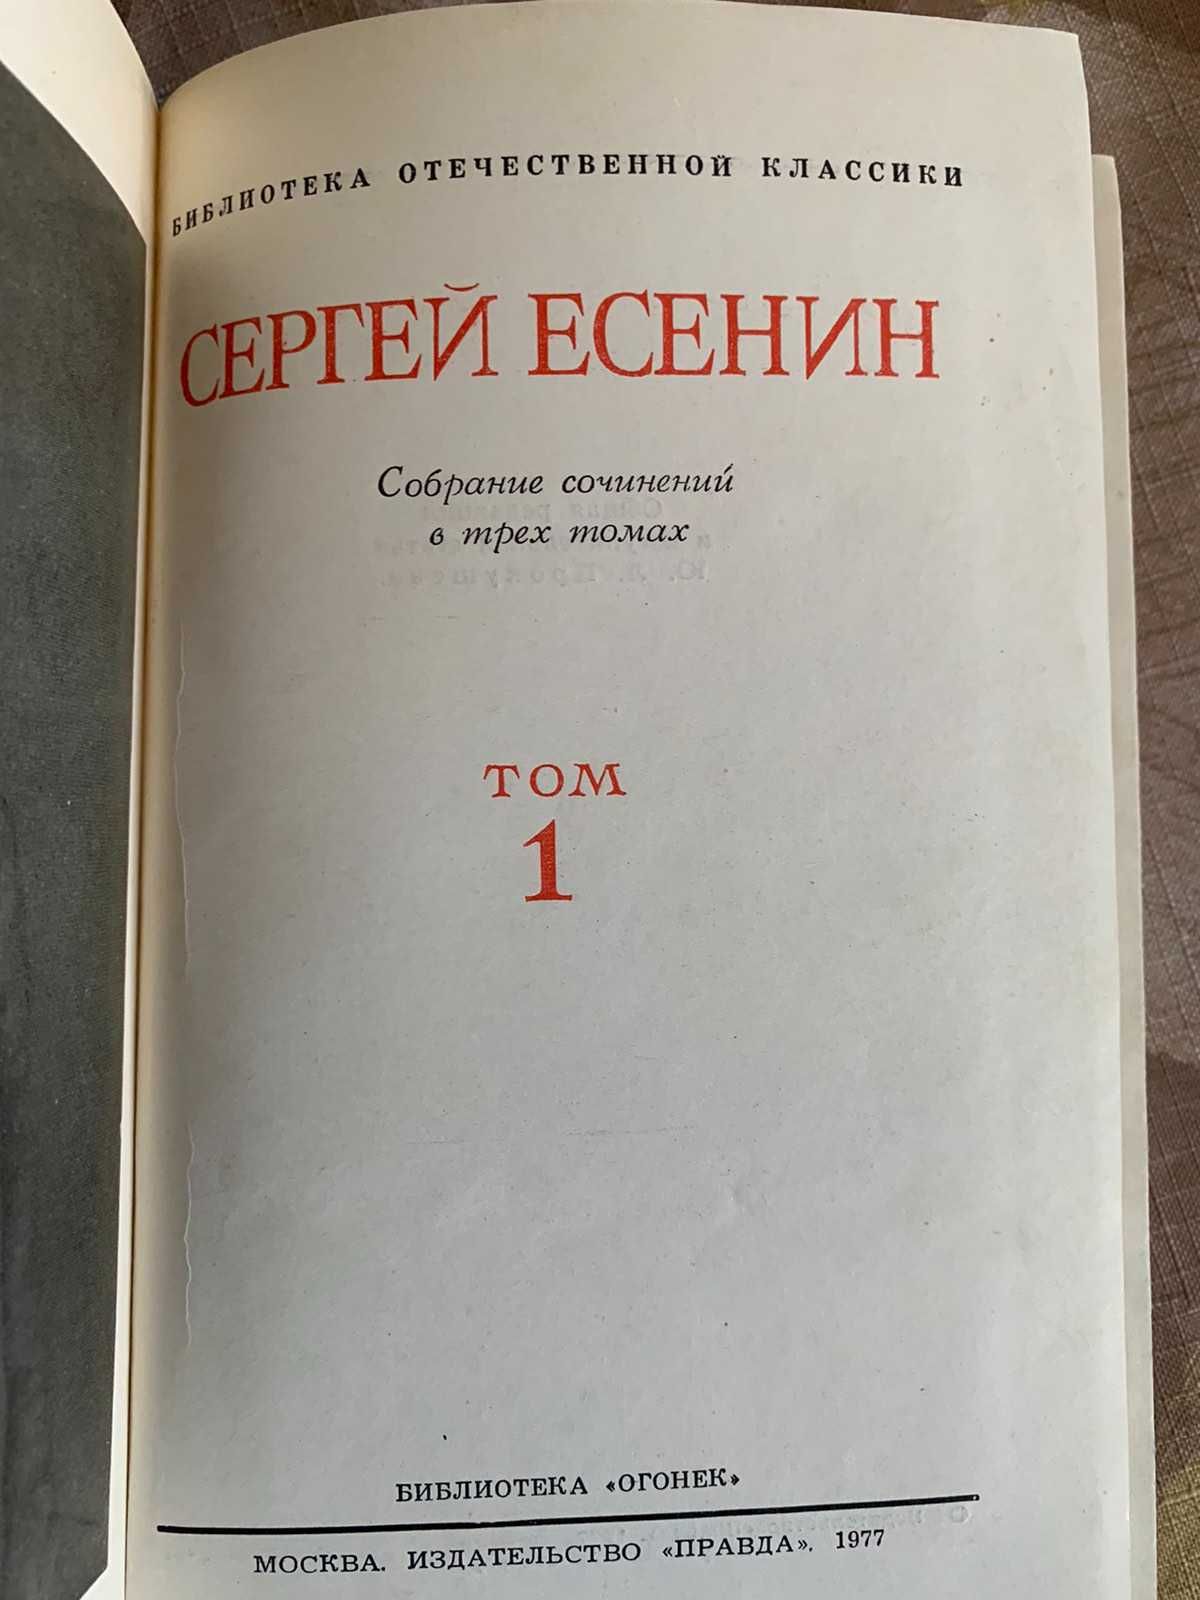 Сергей Есенин. Раритет 1977, 3 тома